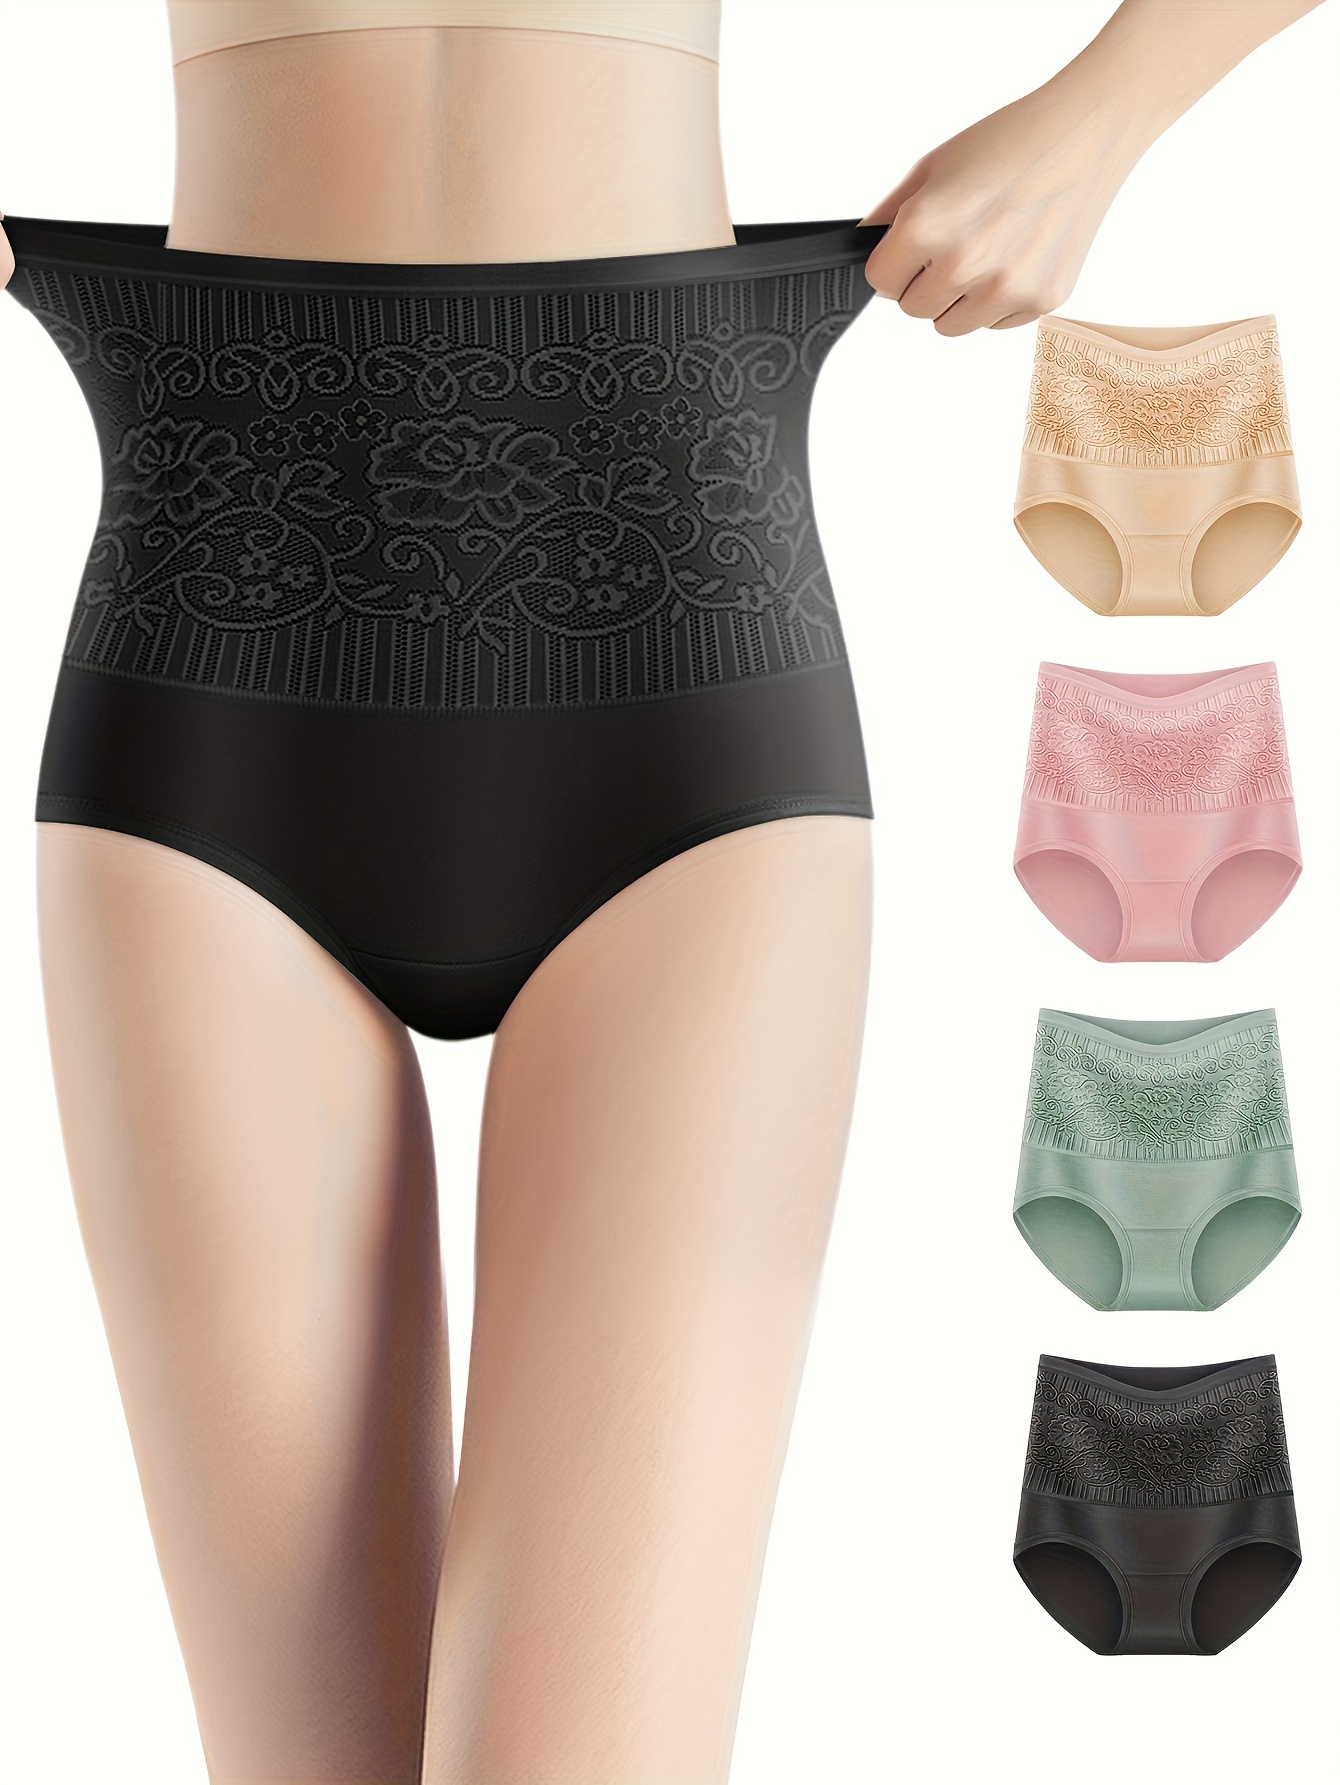 2pcs Cotton Underwear Women Lace Waistband Full Briefs Ladies High Leg Knickers  Ladies Cotton Seamless Underwear